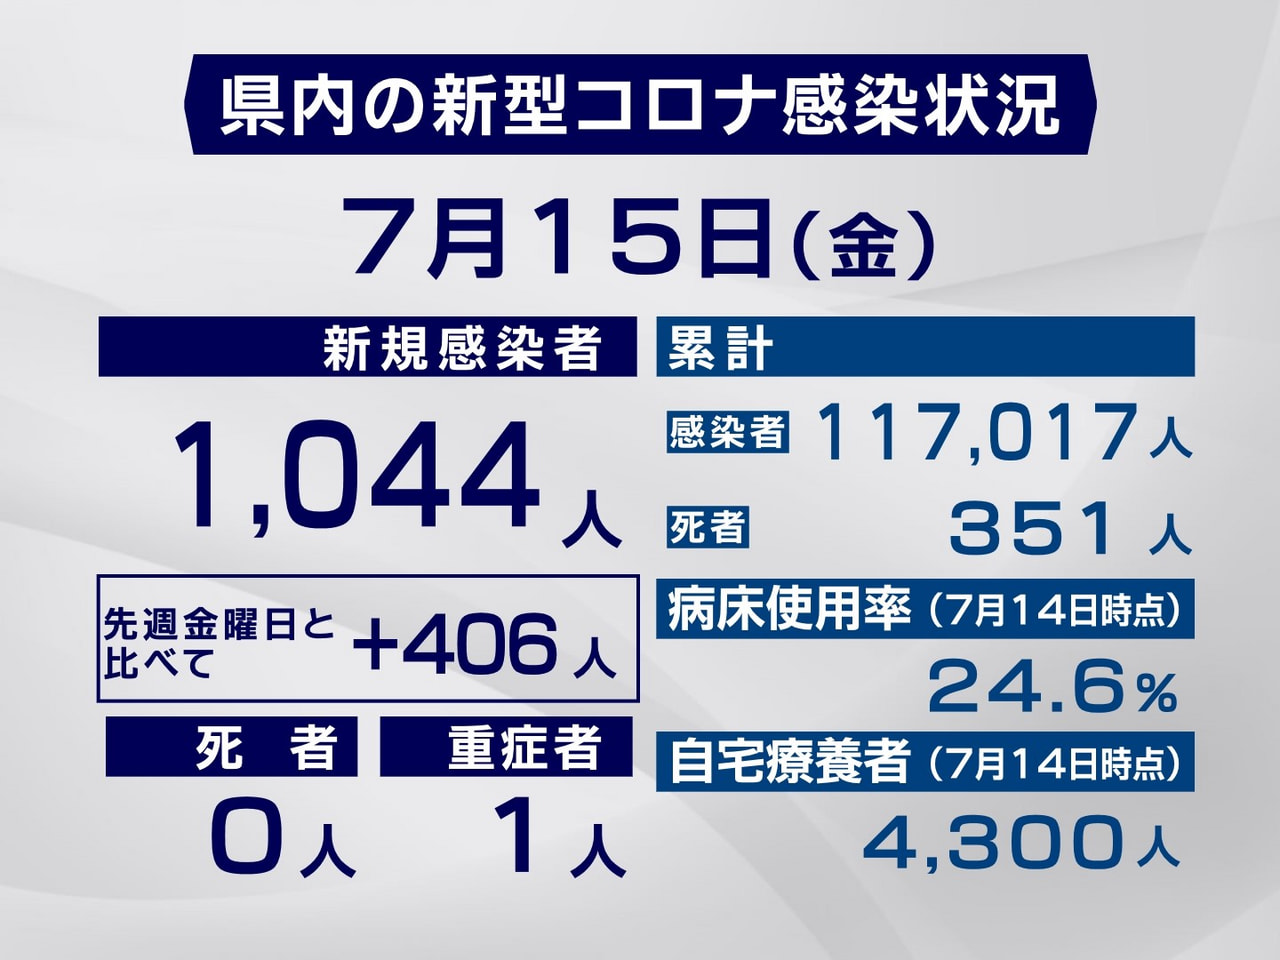 岐阜県は１５日、新型コロナウイルスの新規感染者が１０４４人確認されたと発表しまし...